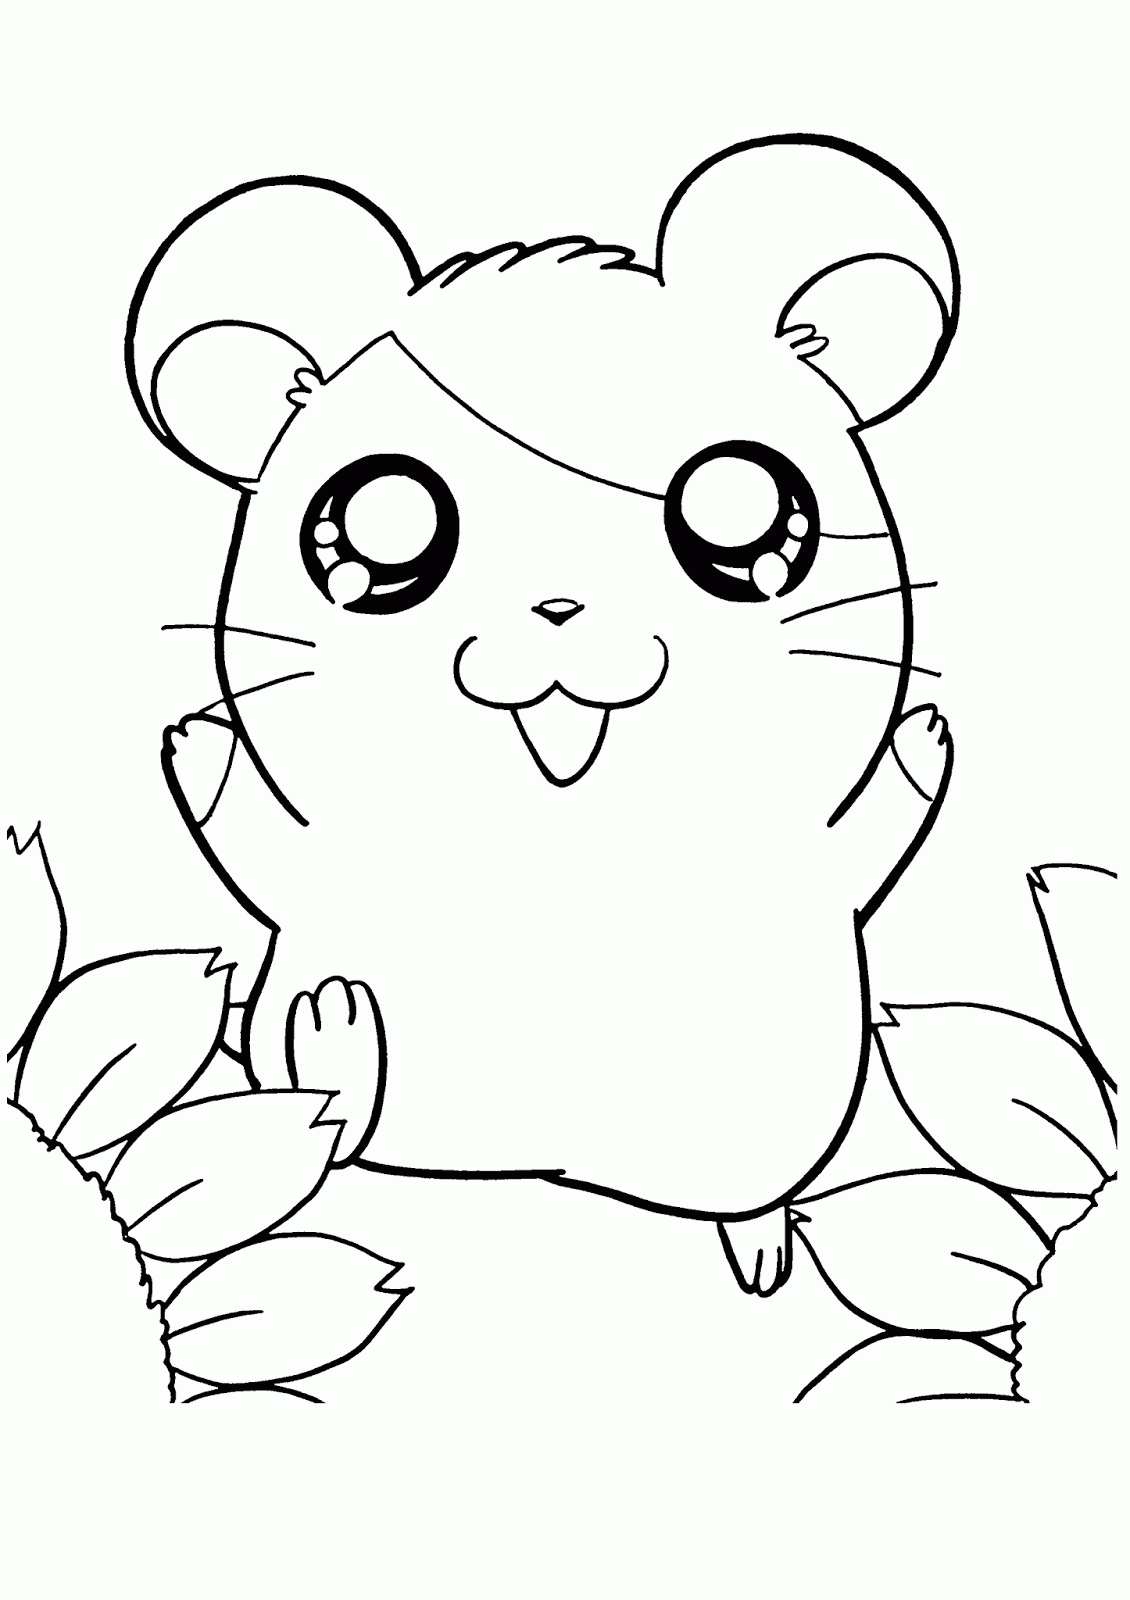 Featured image of post Desenho De Hamster Para Colorir Guarda do le o descubram milhares de desenhos a colorir gratuitos para imprimir destinados ao p blico infantil